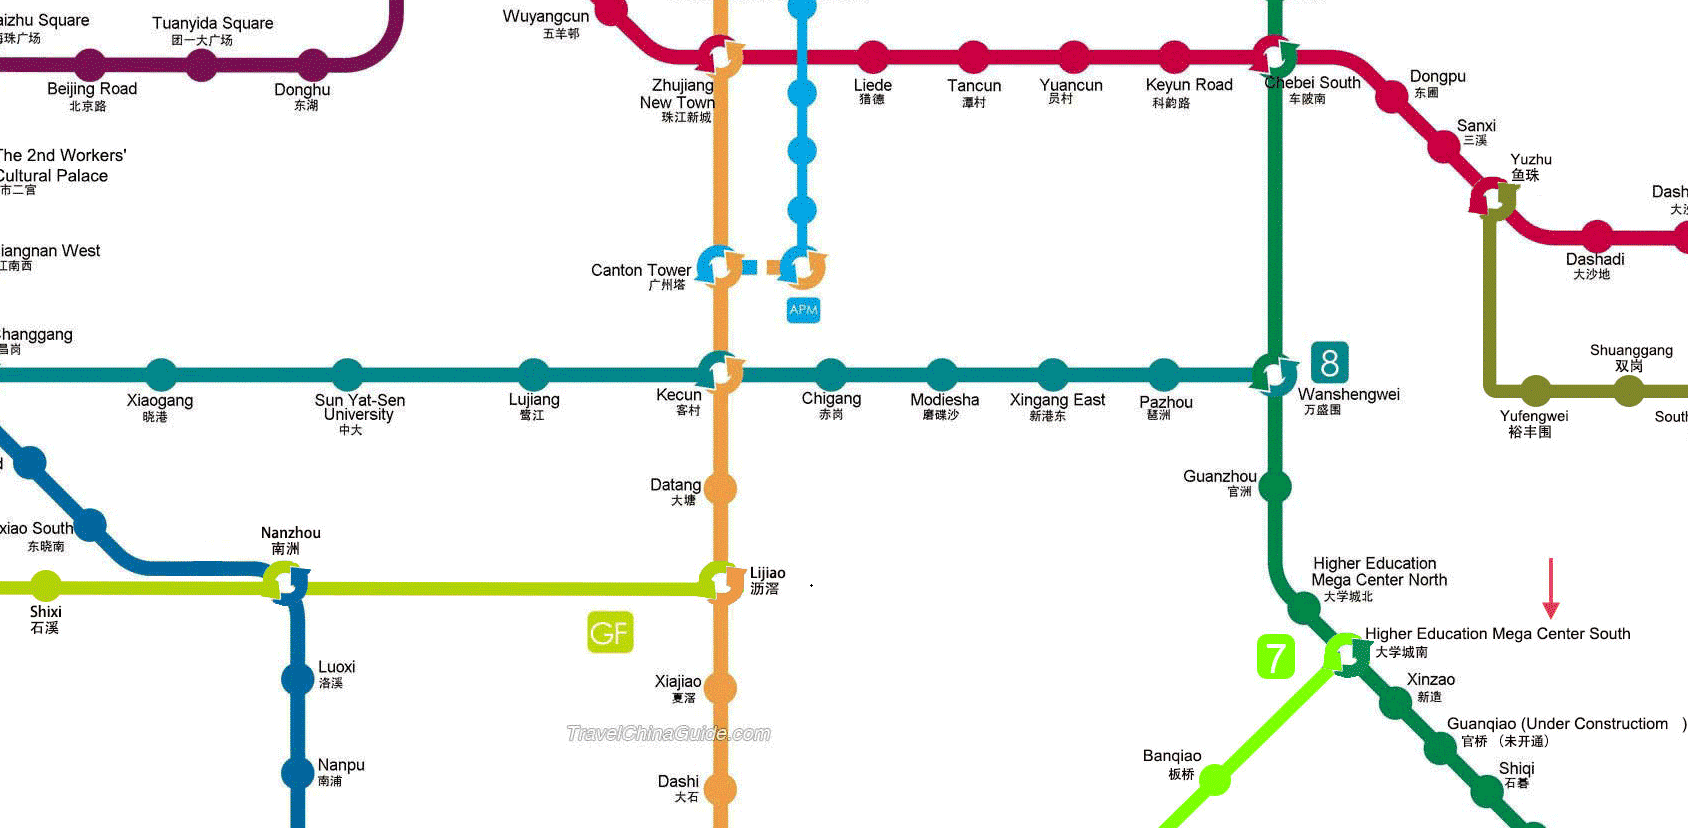 screenshot-of-guangzhou-metro-map